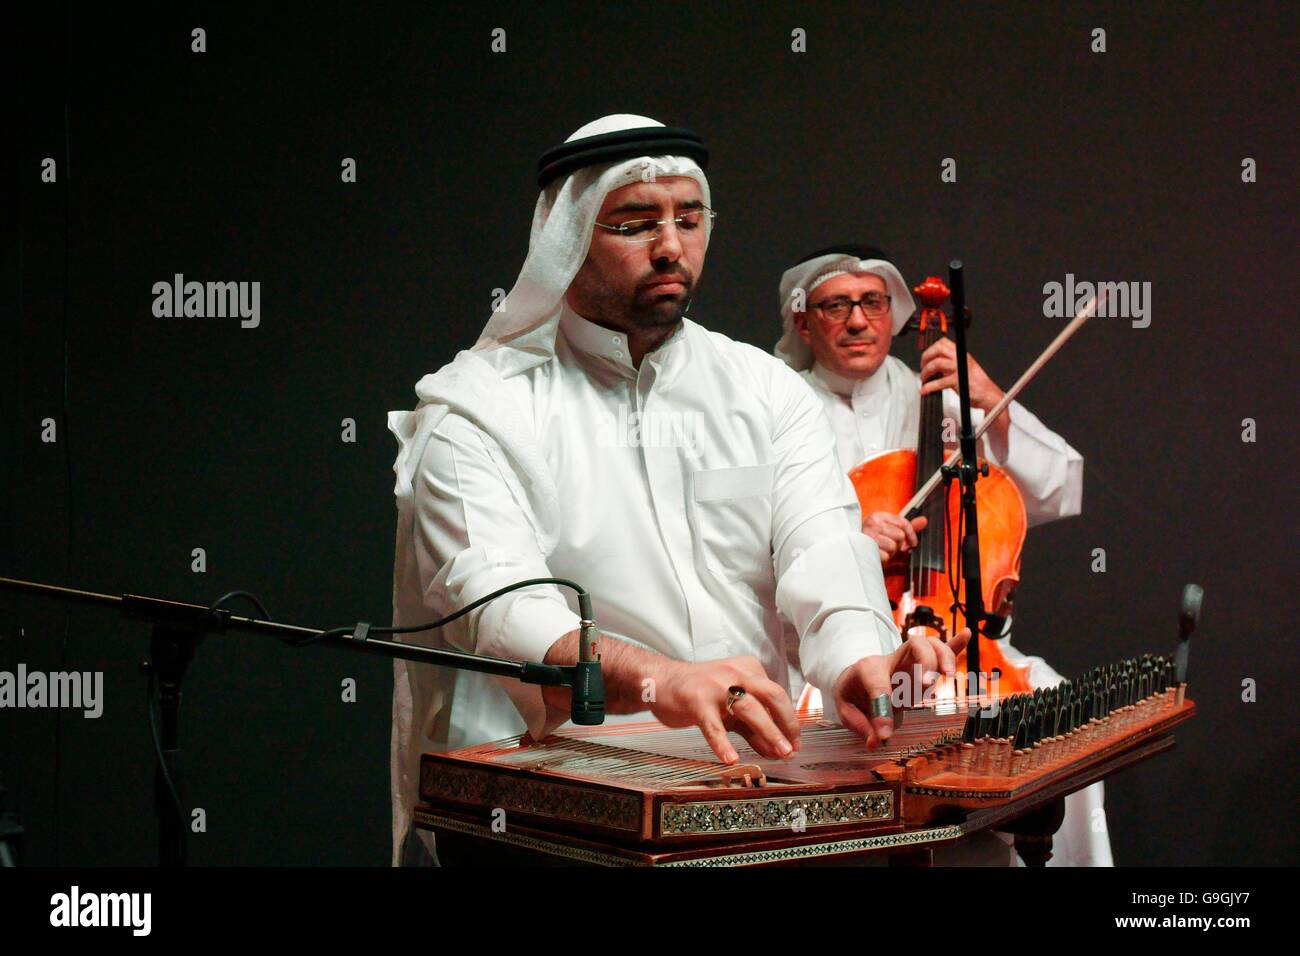 Musicien de la Fondation Mohammed bin Faris joue ensemble cithare qunan à traditionnel concert de musique Sawt al Khalifa center, Bahreïn Banque D'Images